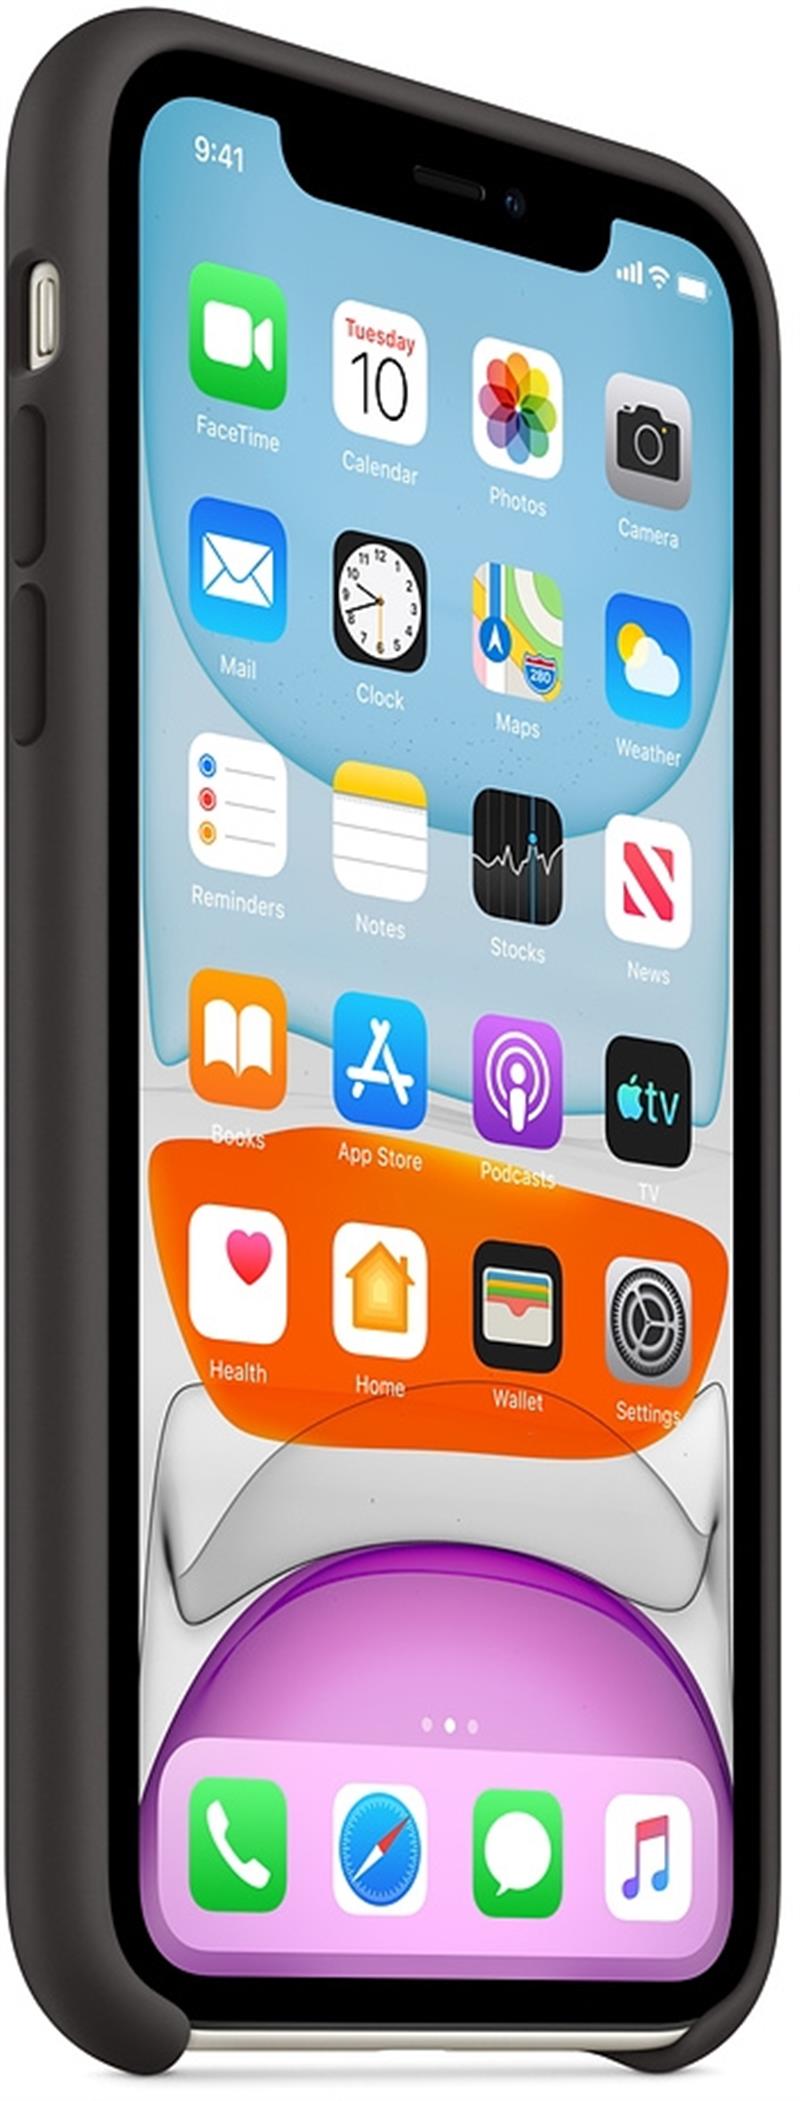 Apple mobiele telefoon behuizingen 15 5 cm 6 1 Hoes Zwart